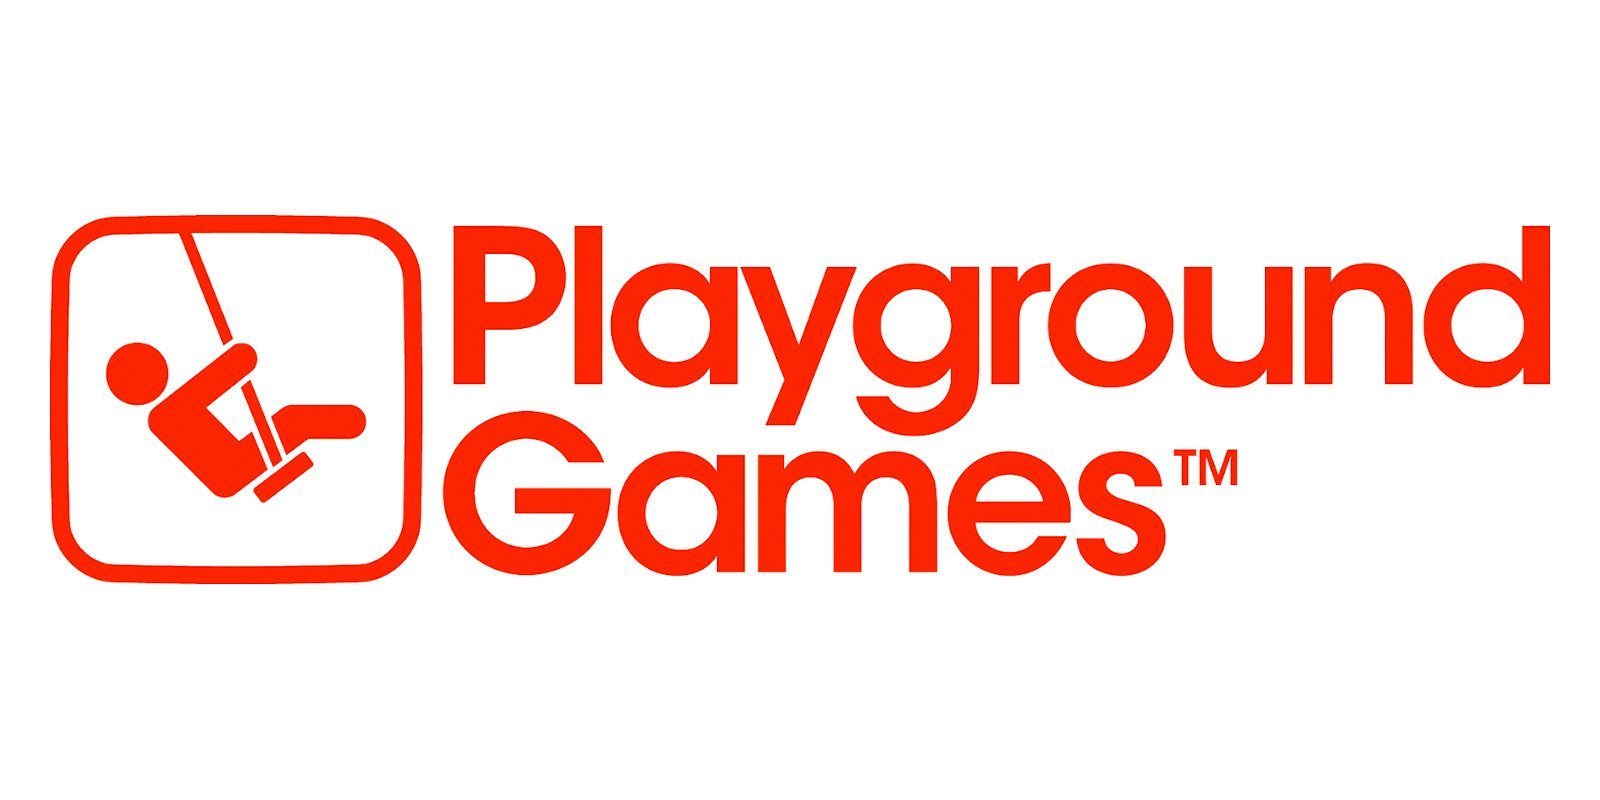 Payground contrata dos nuevos profesionales para el desarrollo de RPG de caracter triple A